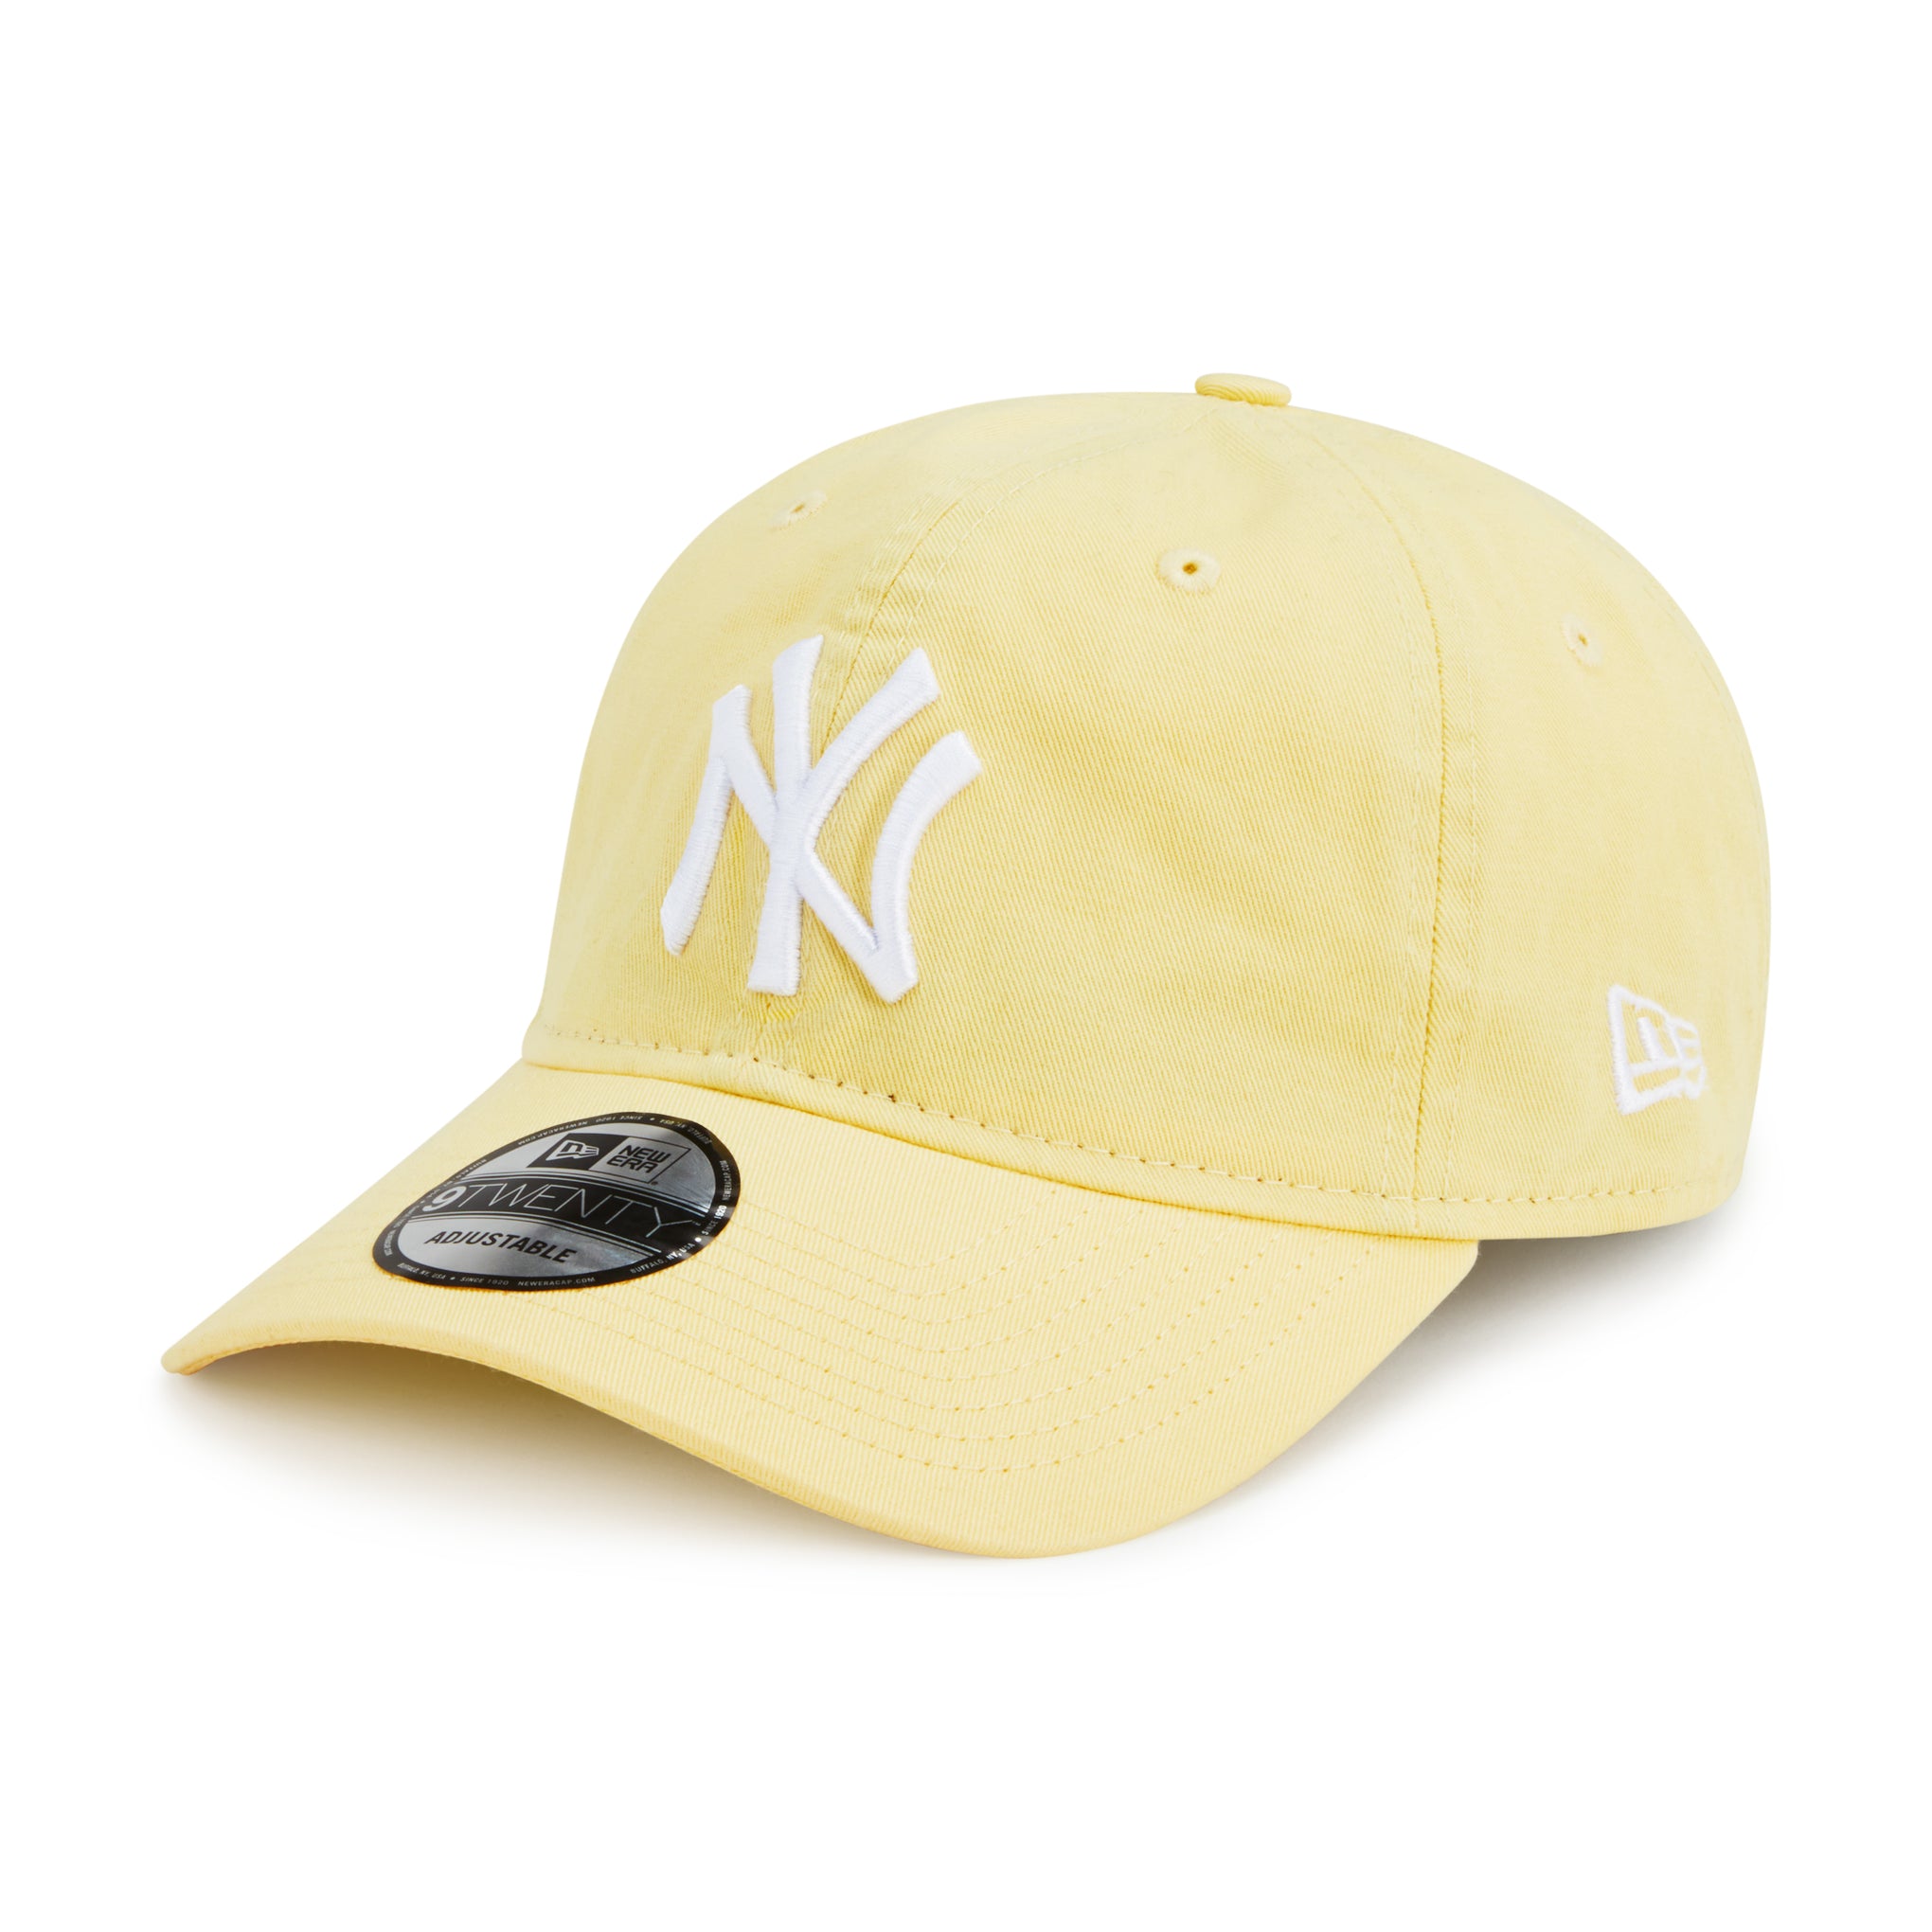 Mua Mũ MLB Color Matching NCOVER Ball Cap New York Yankees Màu NavyTrắng  Sữa  MLB  Mua tại Vua Hàng Hiệu h037876